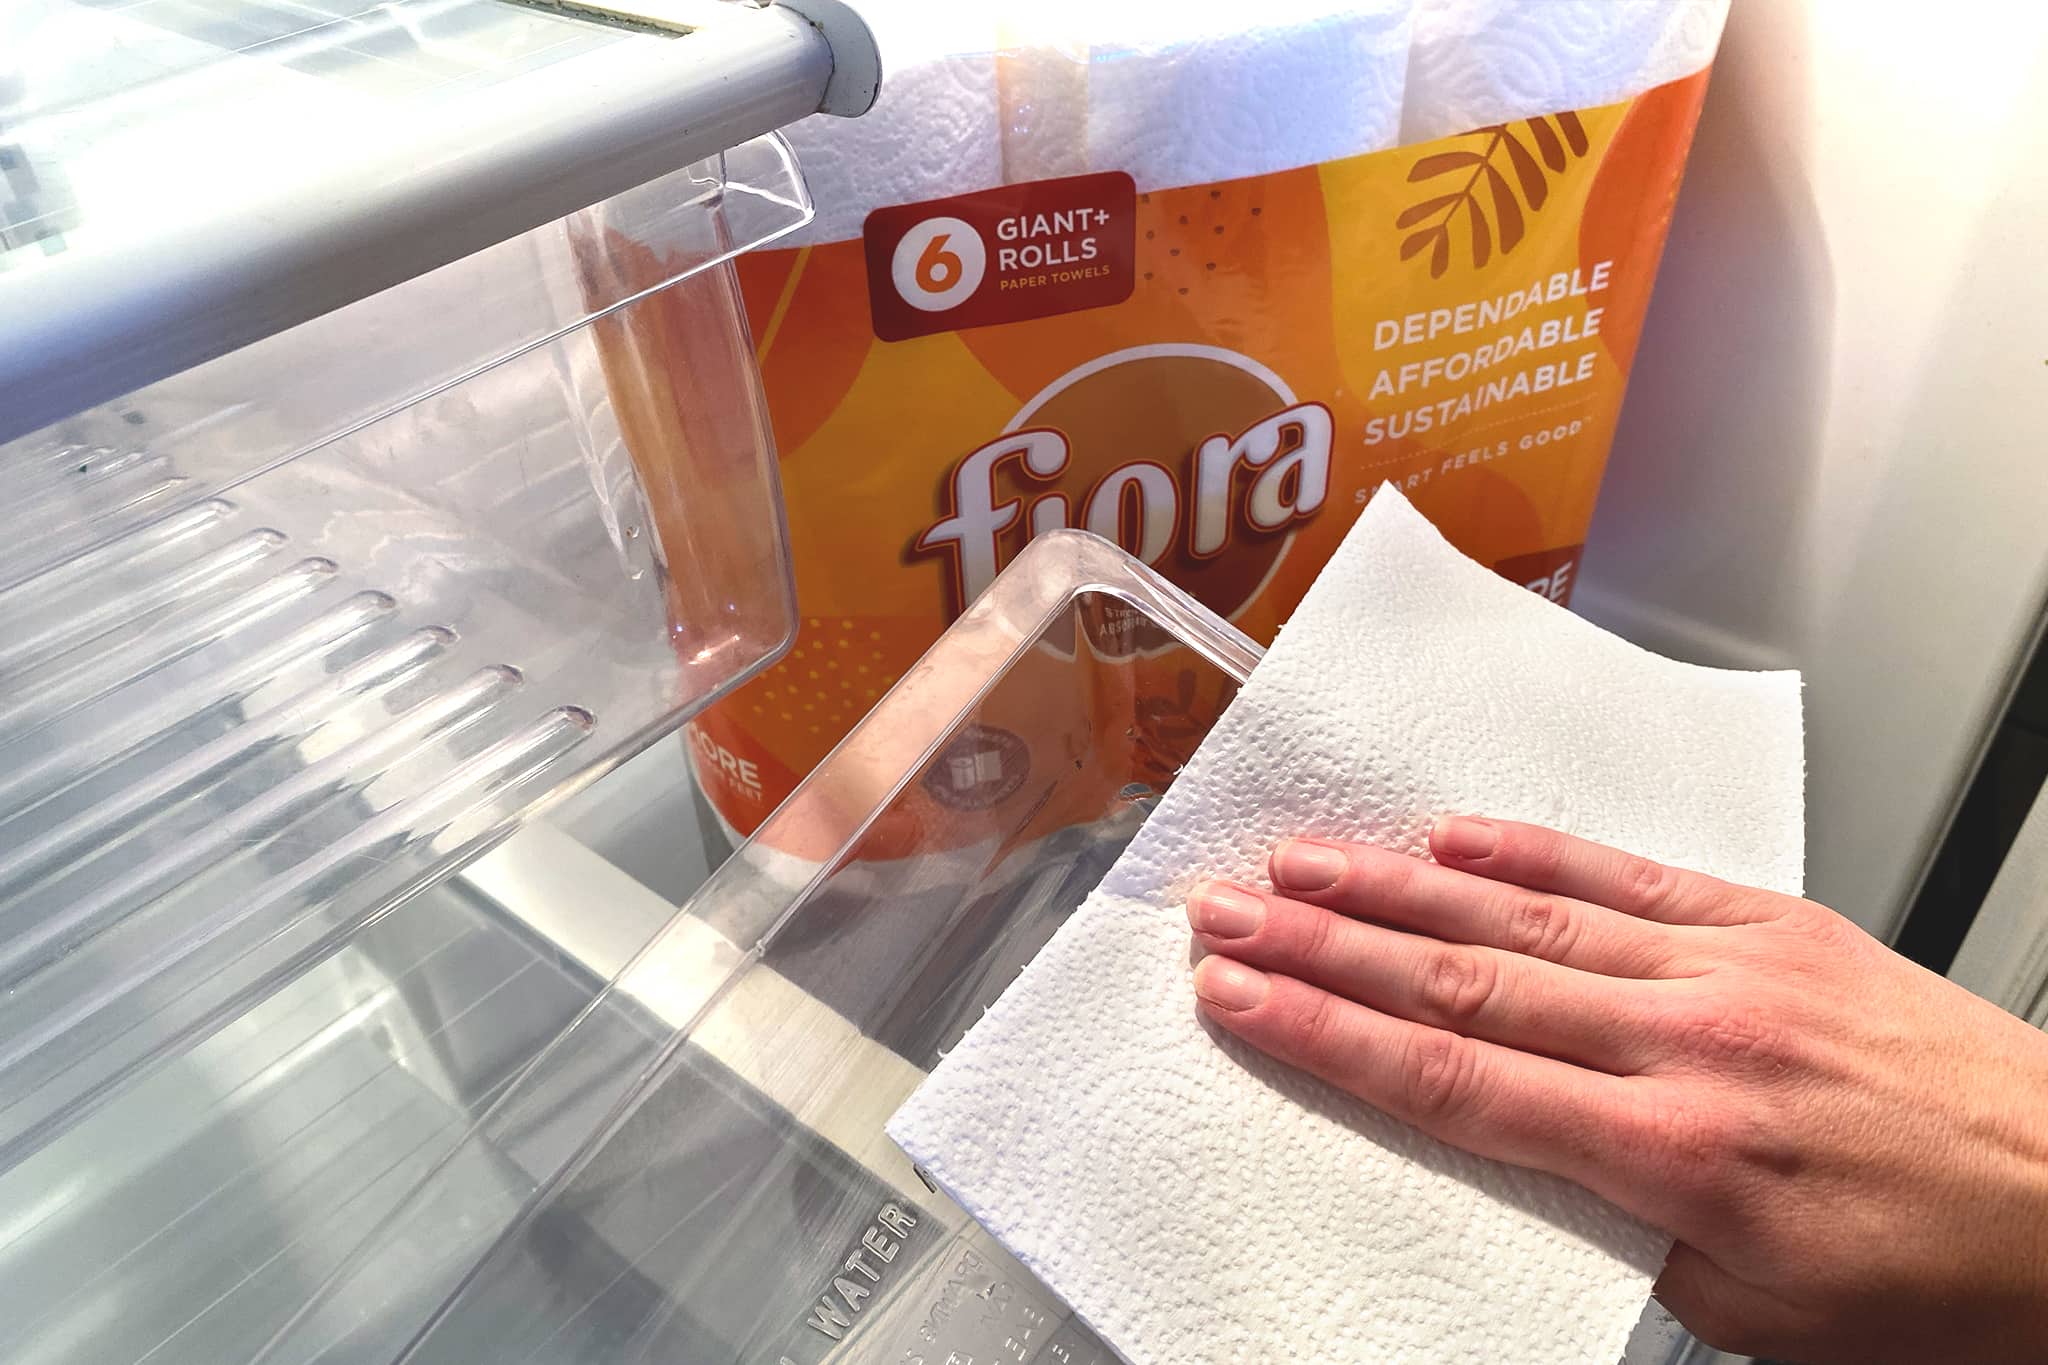 Fiora cleans fridges